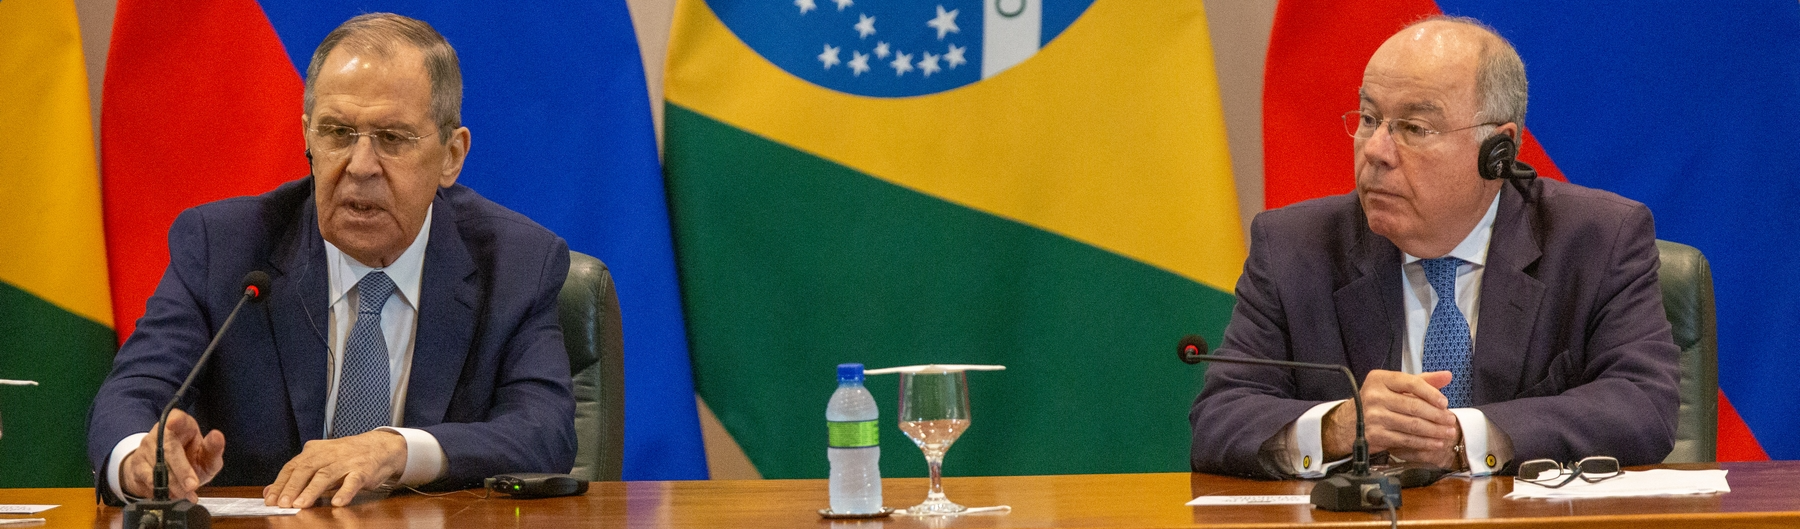 Brasil é coerente ao receber Lavrov e não pode ceder para agradar aos EUA, diz pesquisador